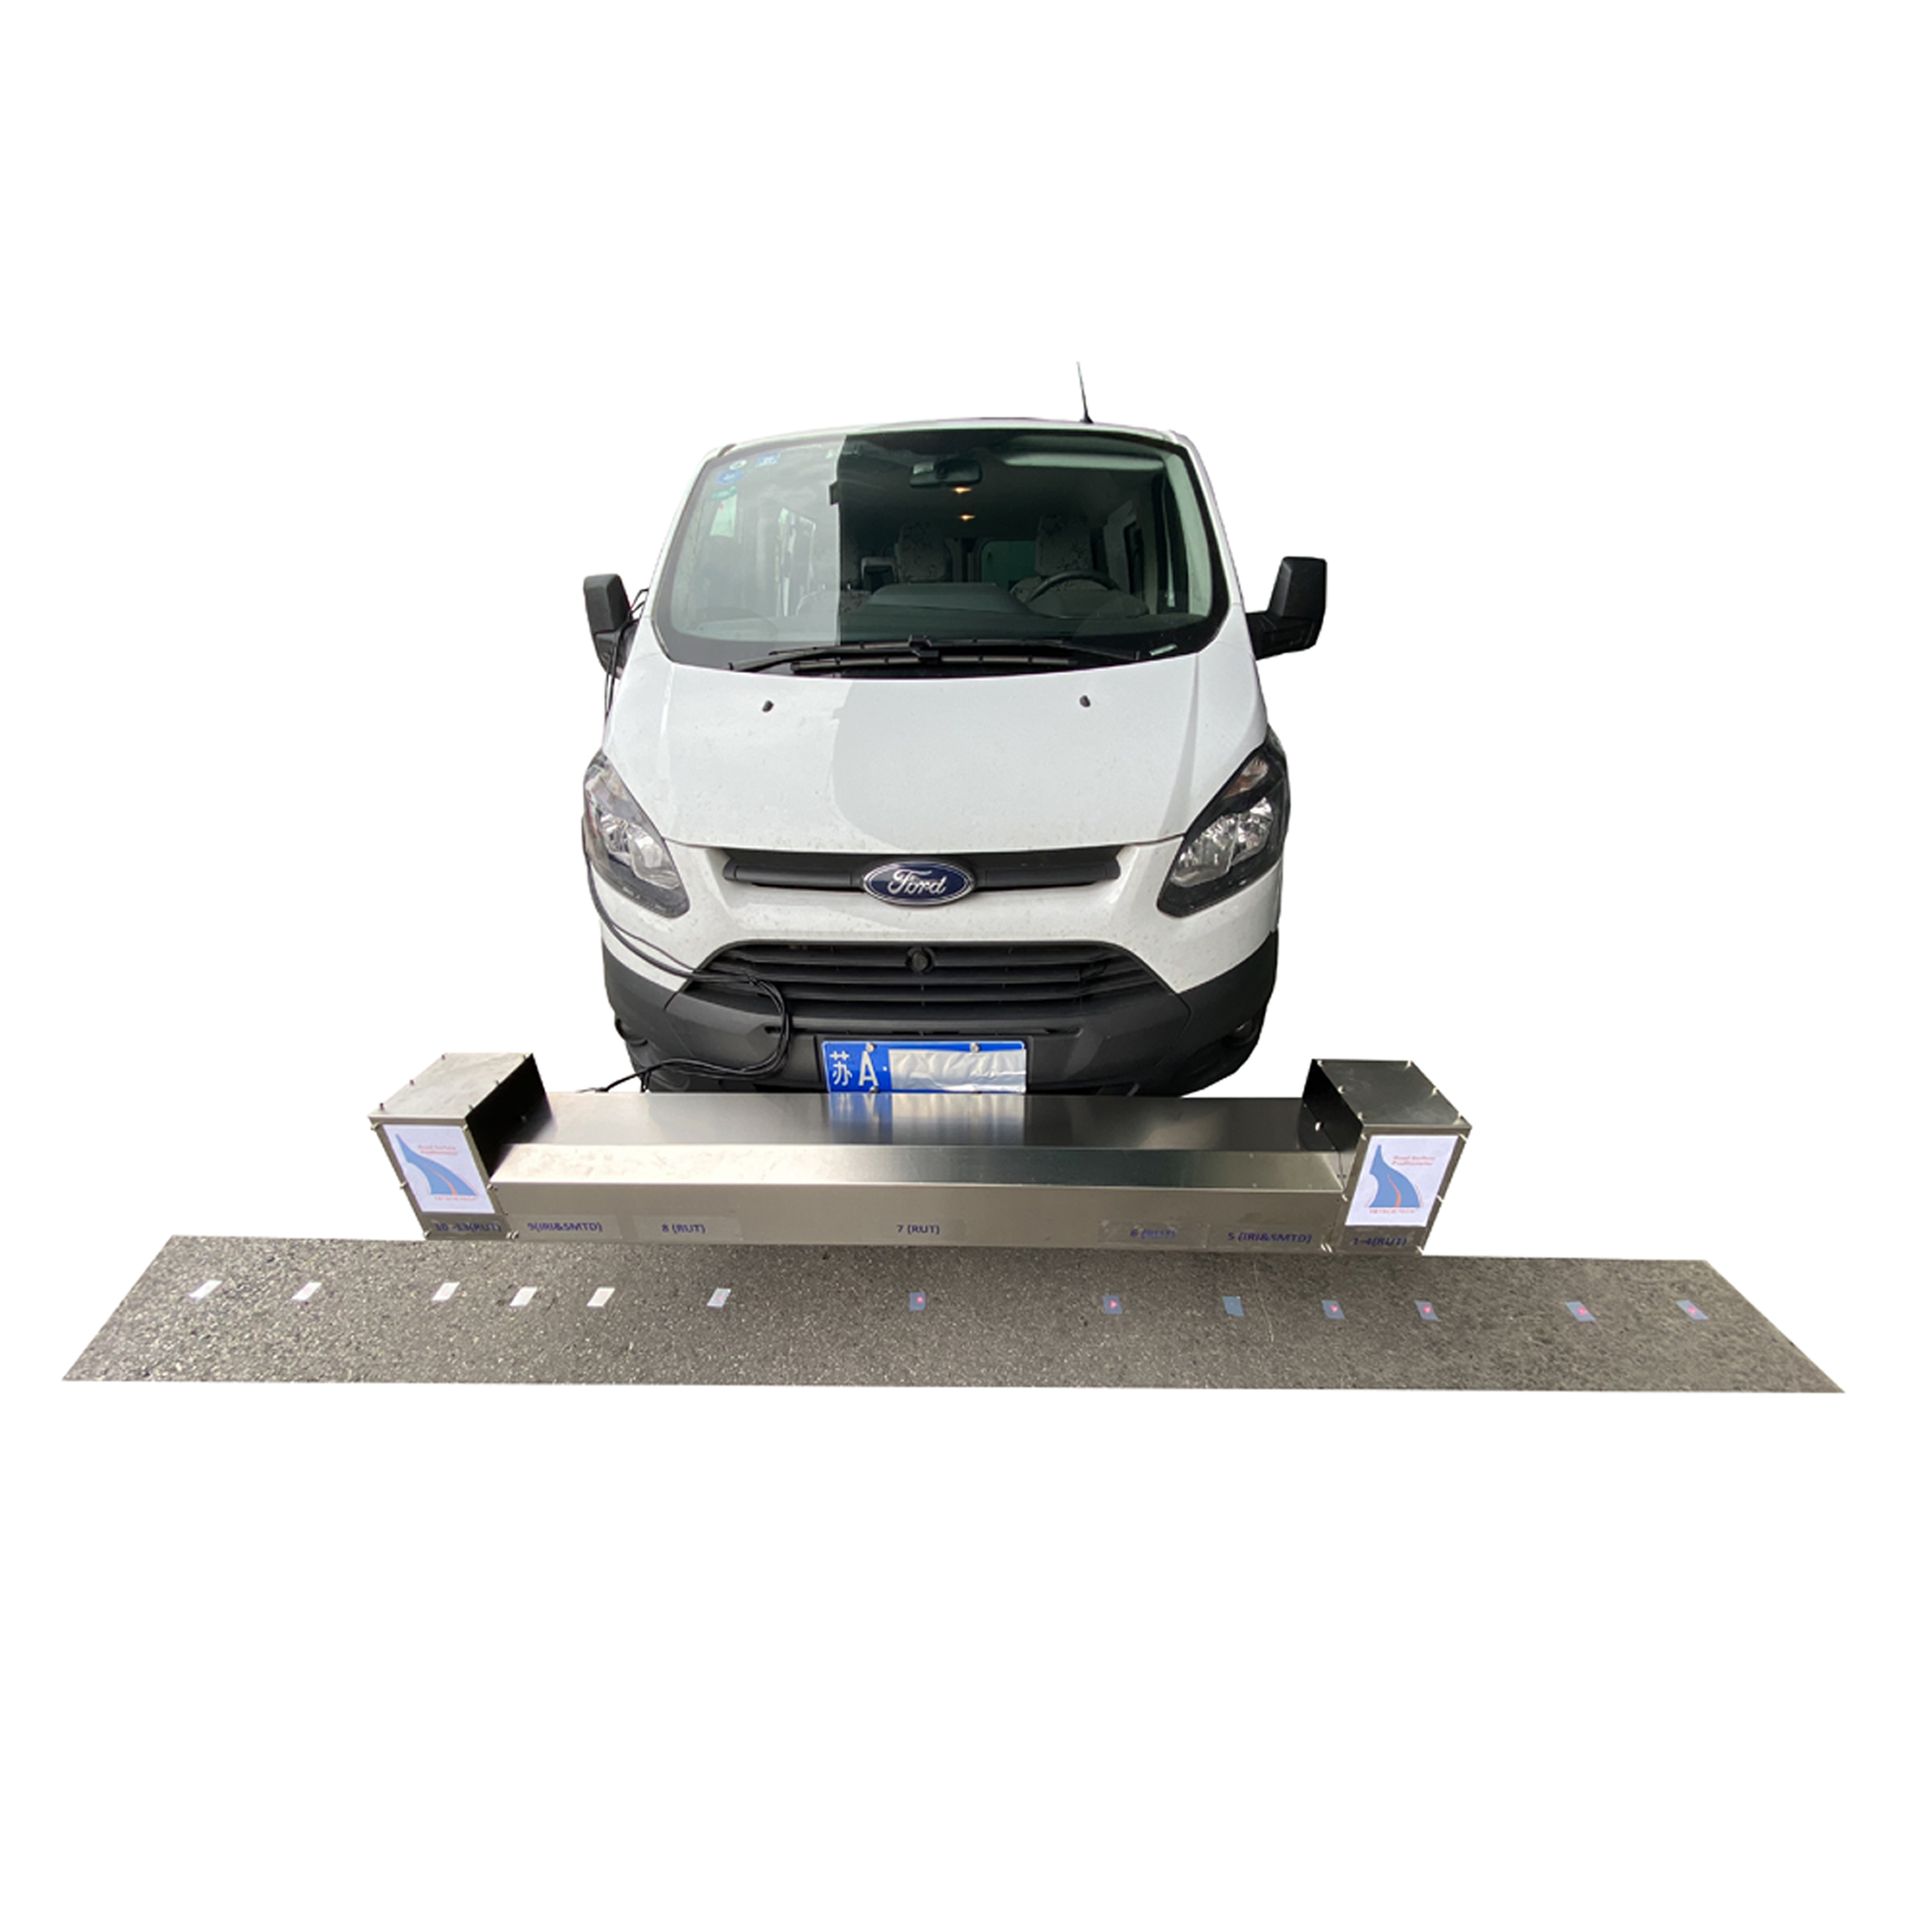 Regla plegable de 3 metros Road Surface Profiler para pruebas de pavimento